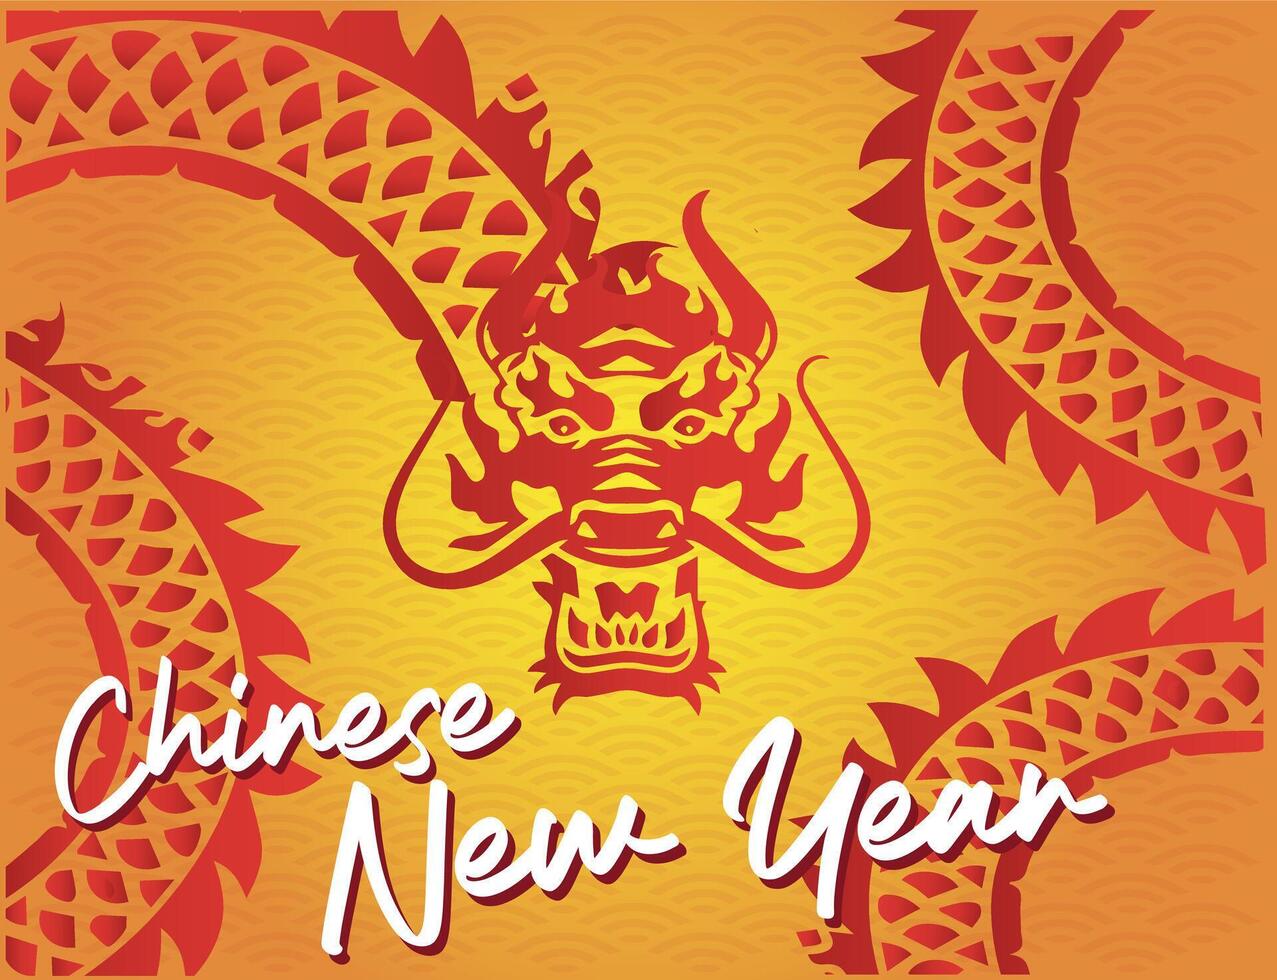 vektor av de drakens ansikte svans kropp i röd silhuett lutning prydnad bakgrund av orange och gul solljus fira kinesisk ny år